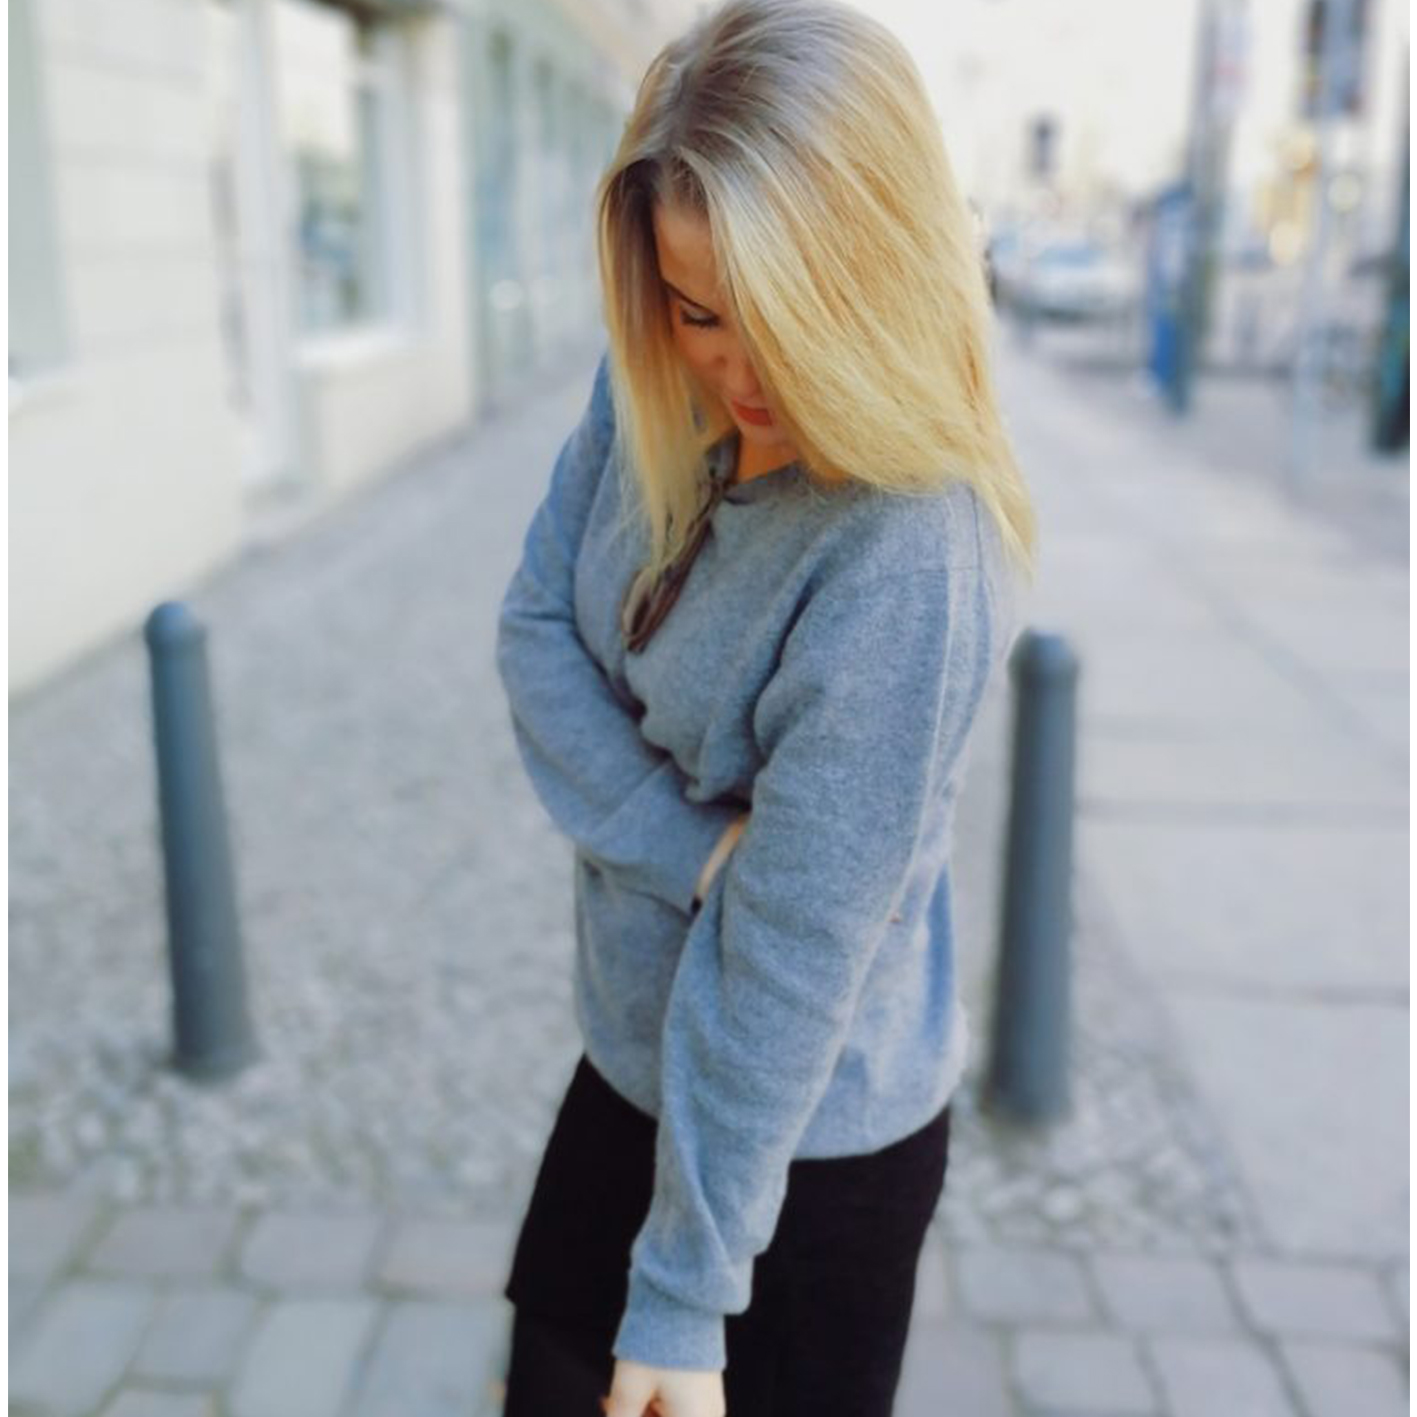 Regitse Rosenvinge i our soft cashmere sweater from her blog The Copenhagen Traveler